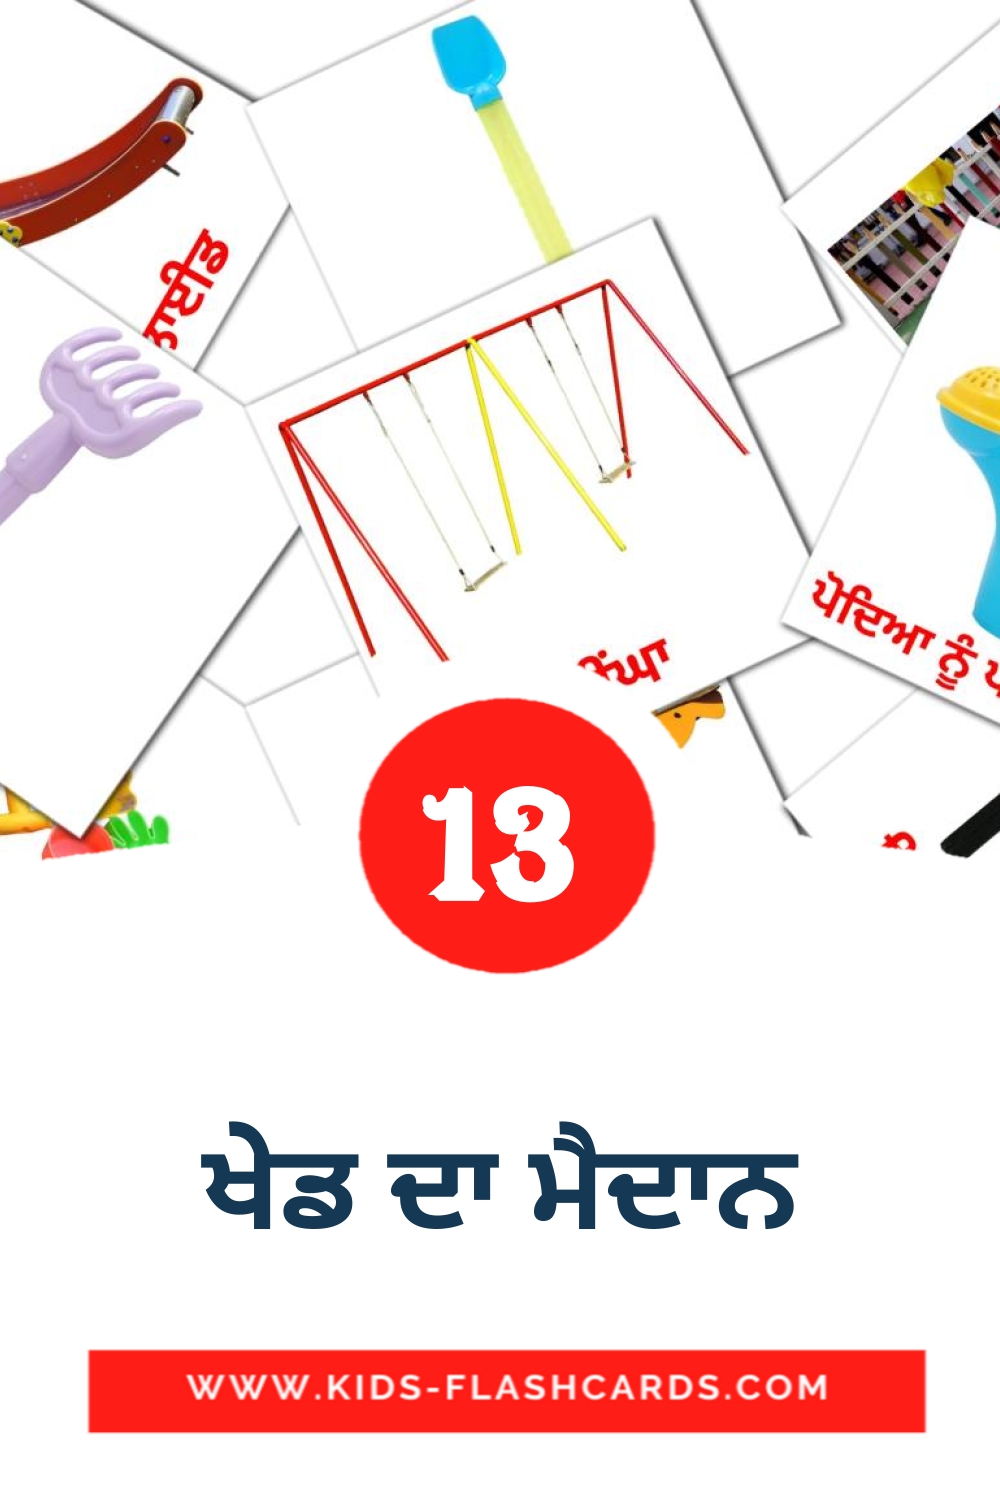 13 tarjetas didacticas de ਖੇਡ ਦਾ ਮੈਦਾਨ para el jardín de infancia en punjabi(gurmukhi)